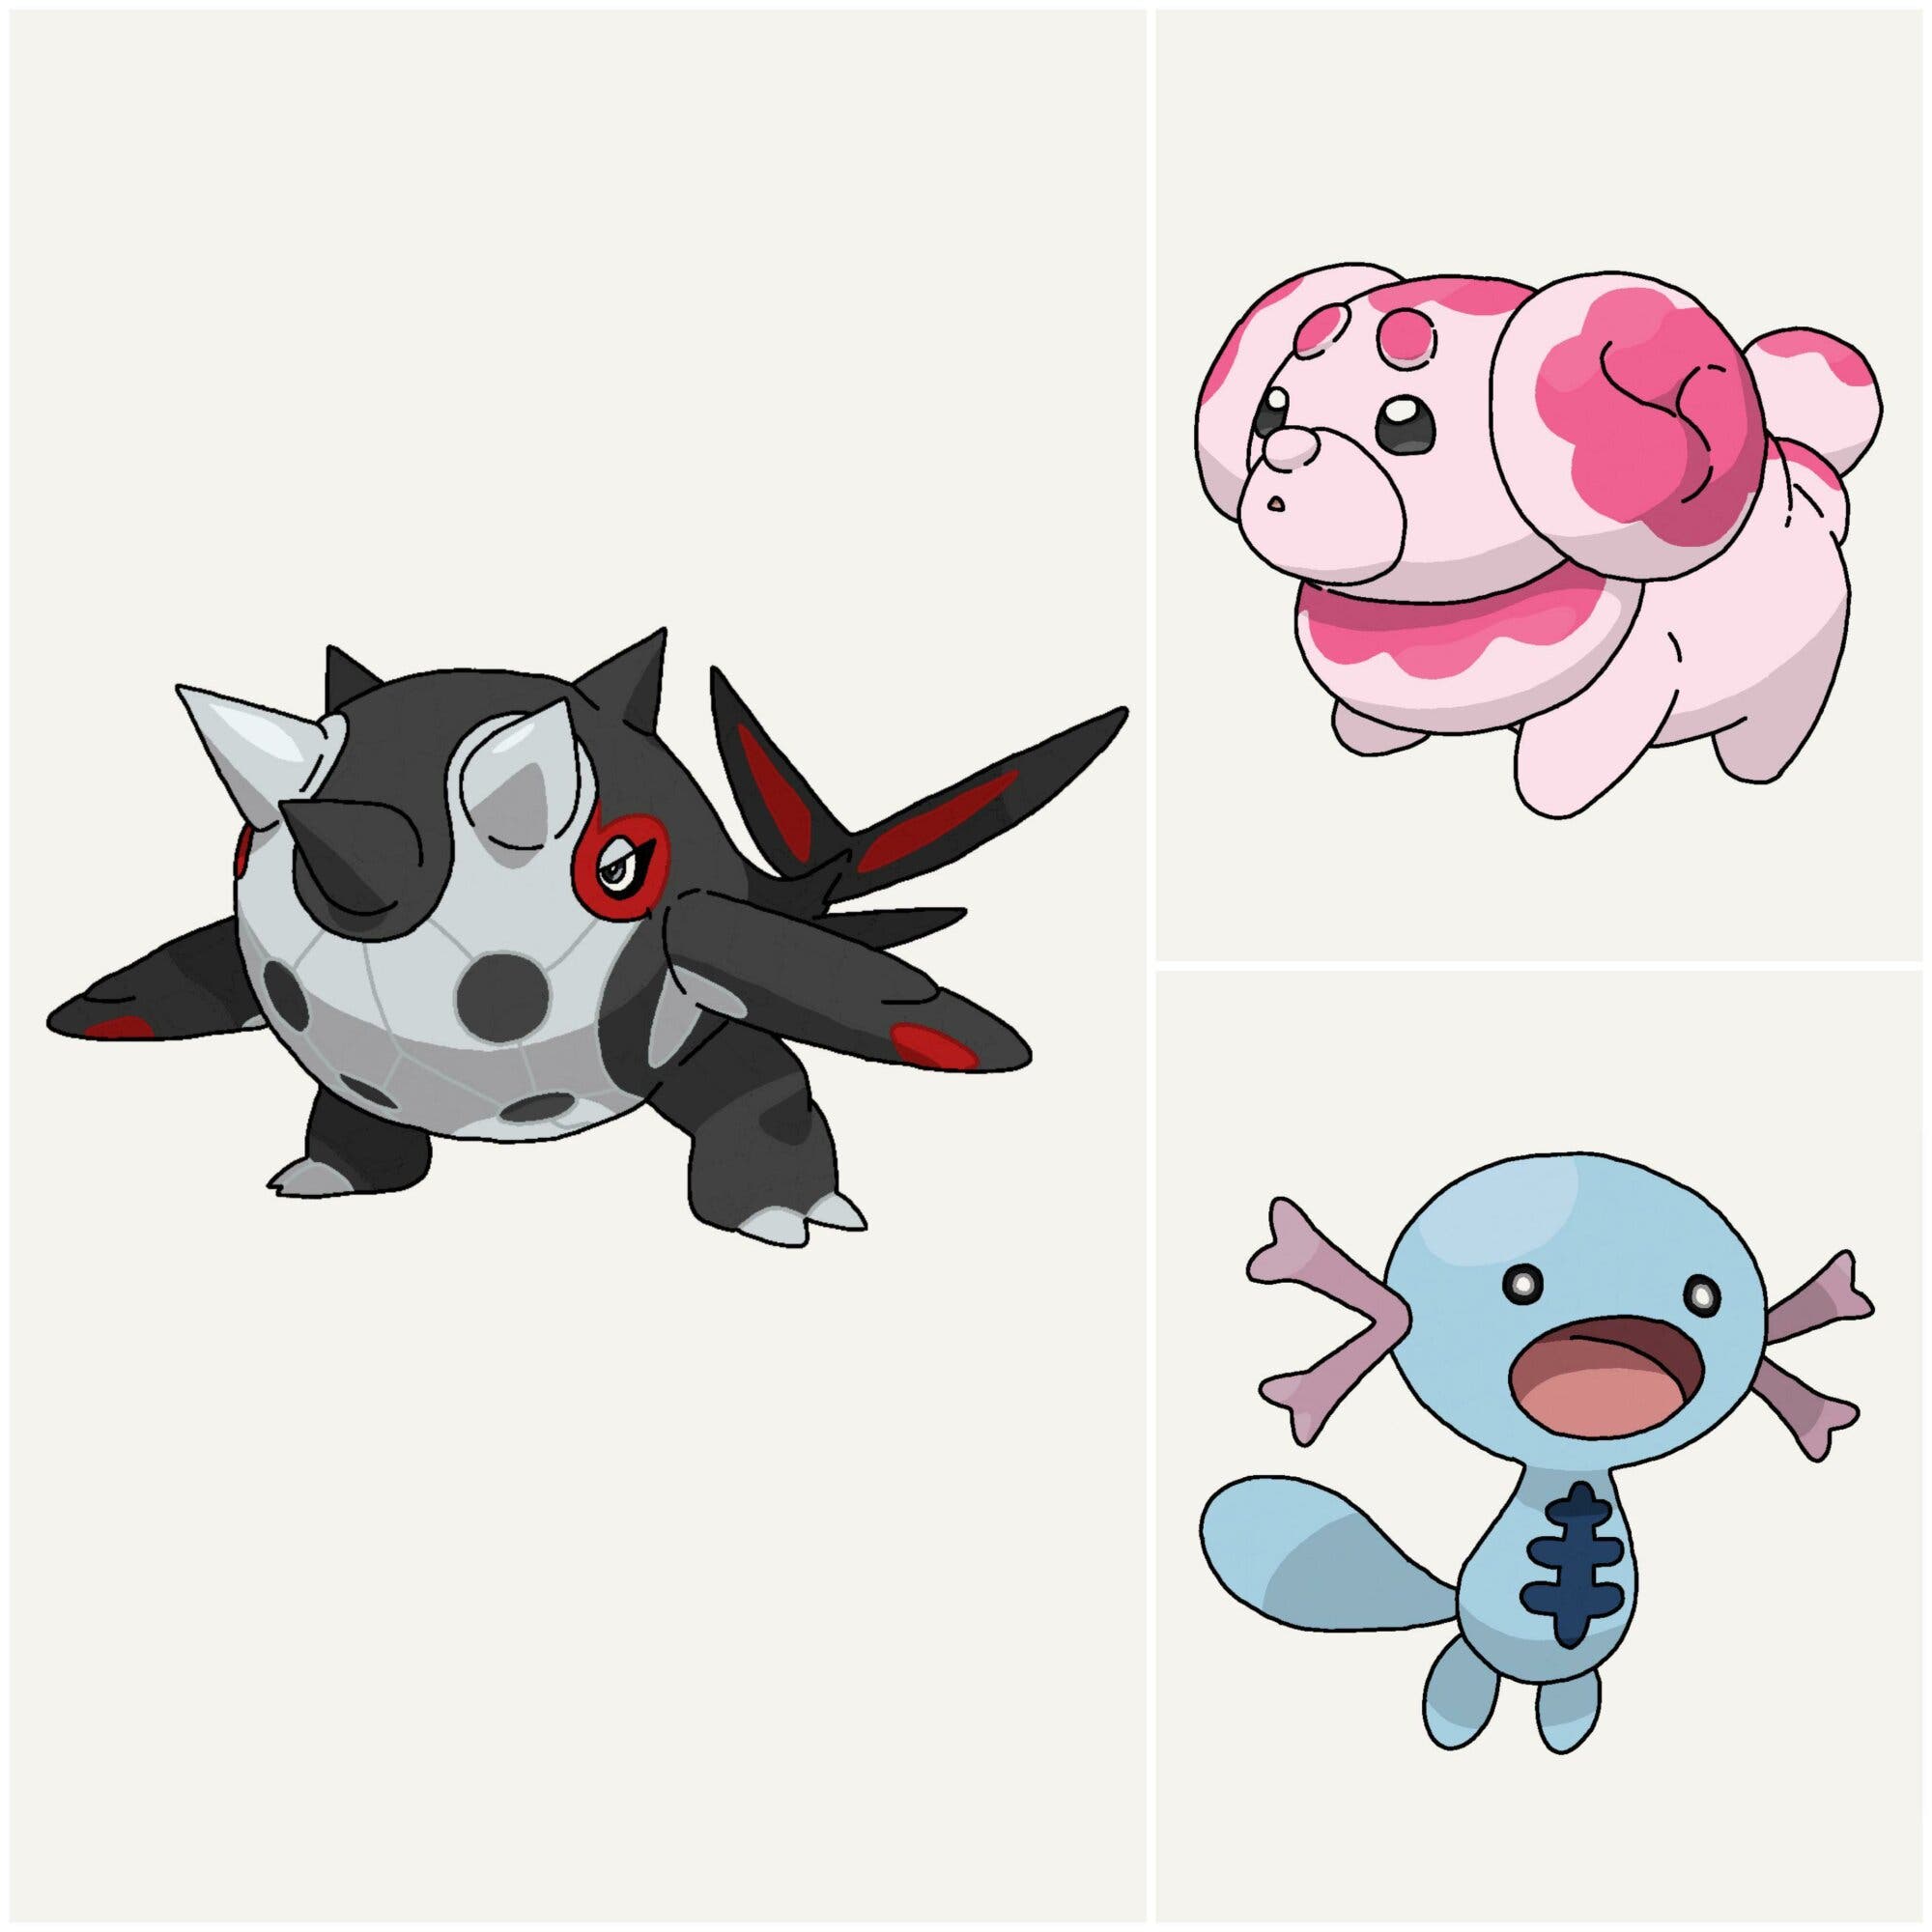 Fan de Pokémon Escarlata/Púrpura imagina las variantes shiny de los tres  iniciales, ¡y son monísimos!